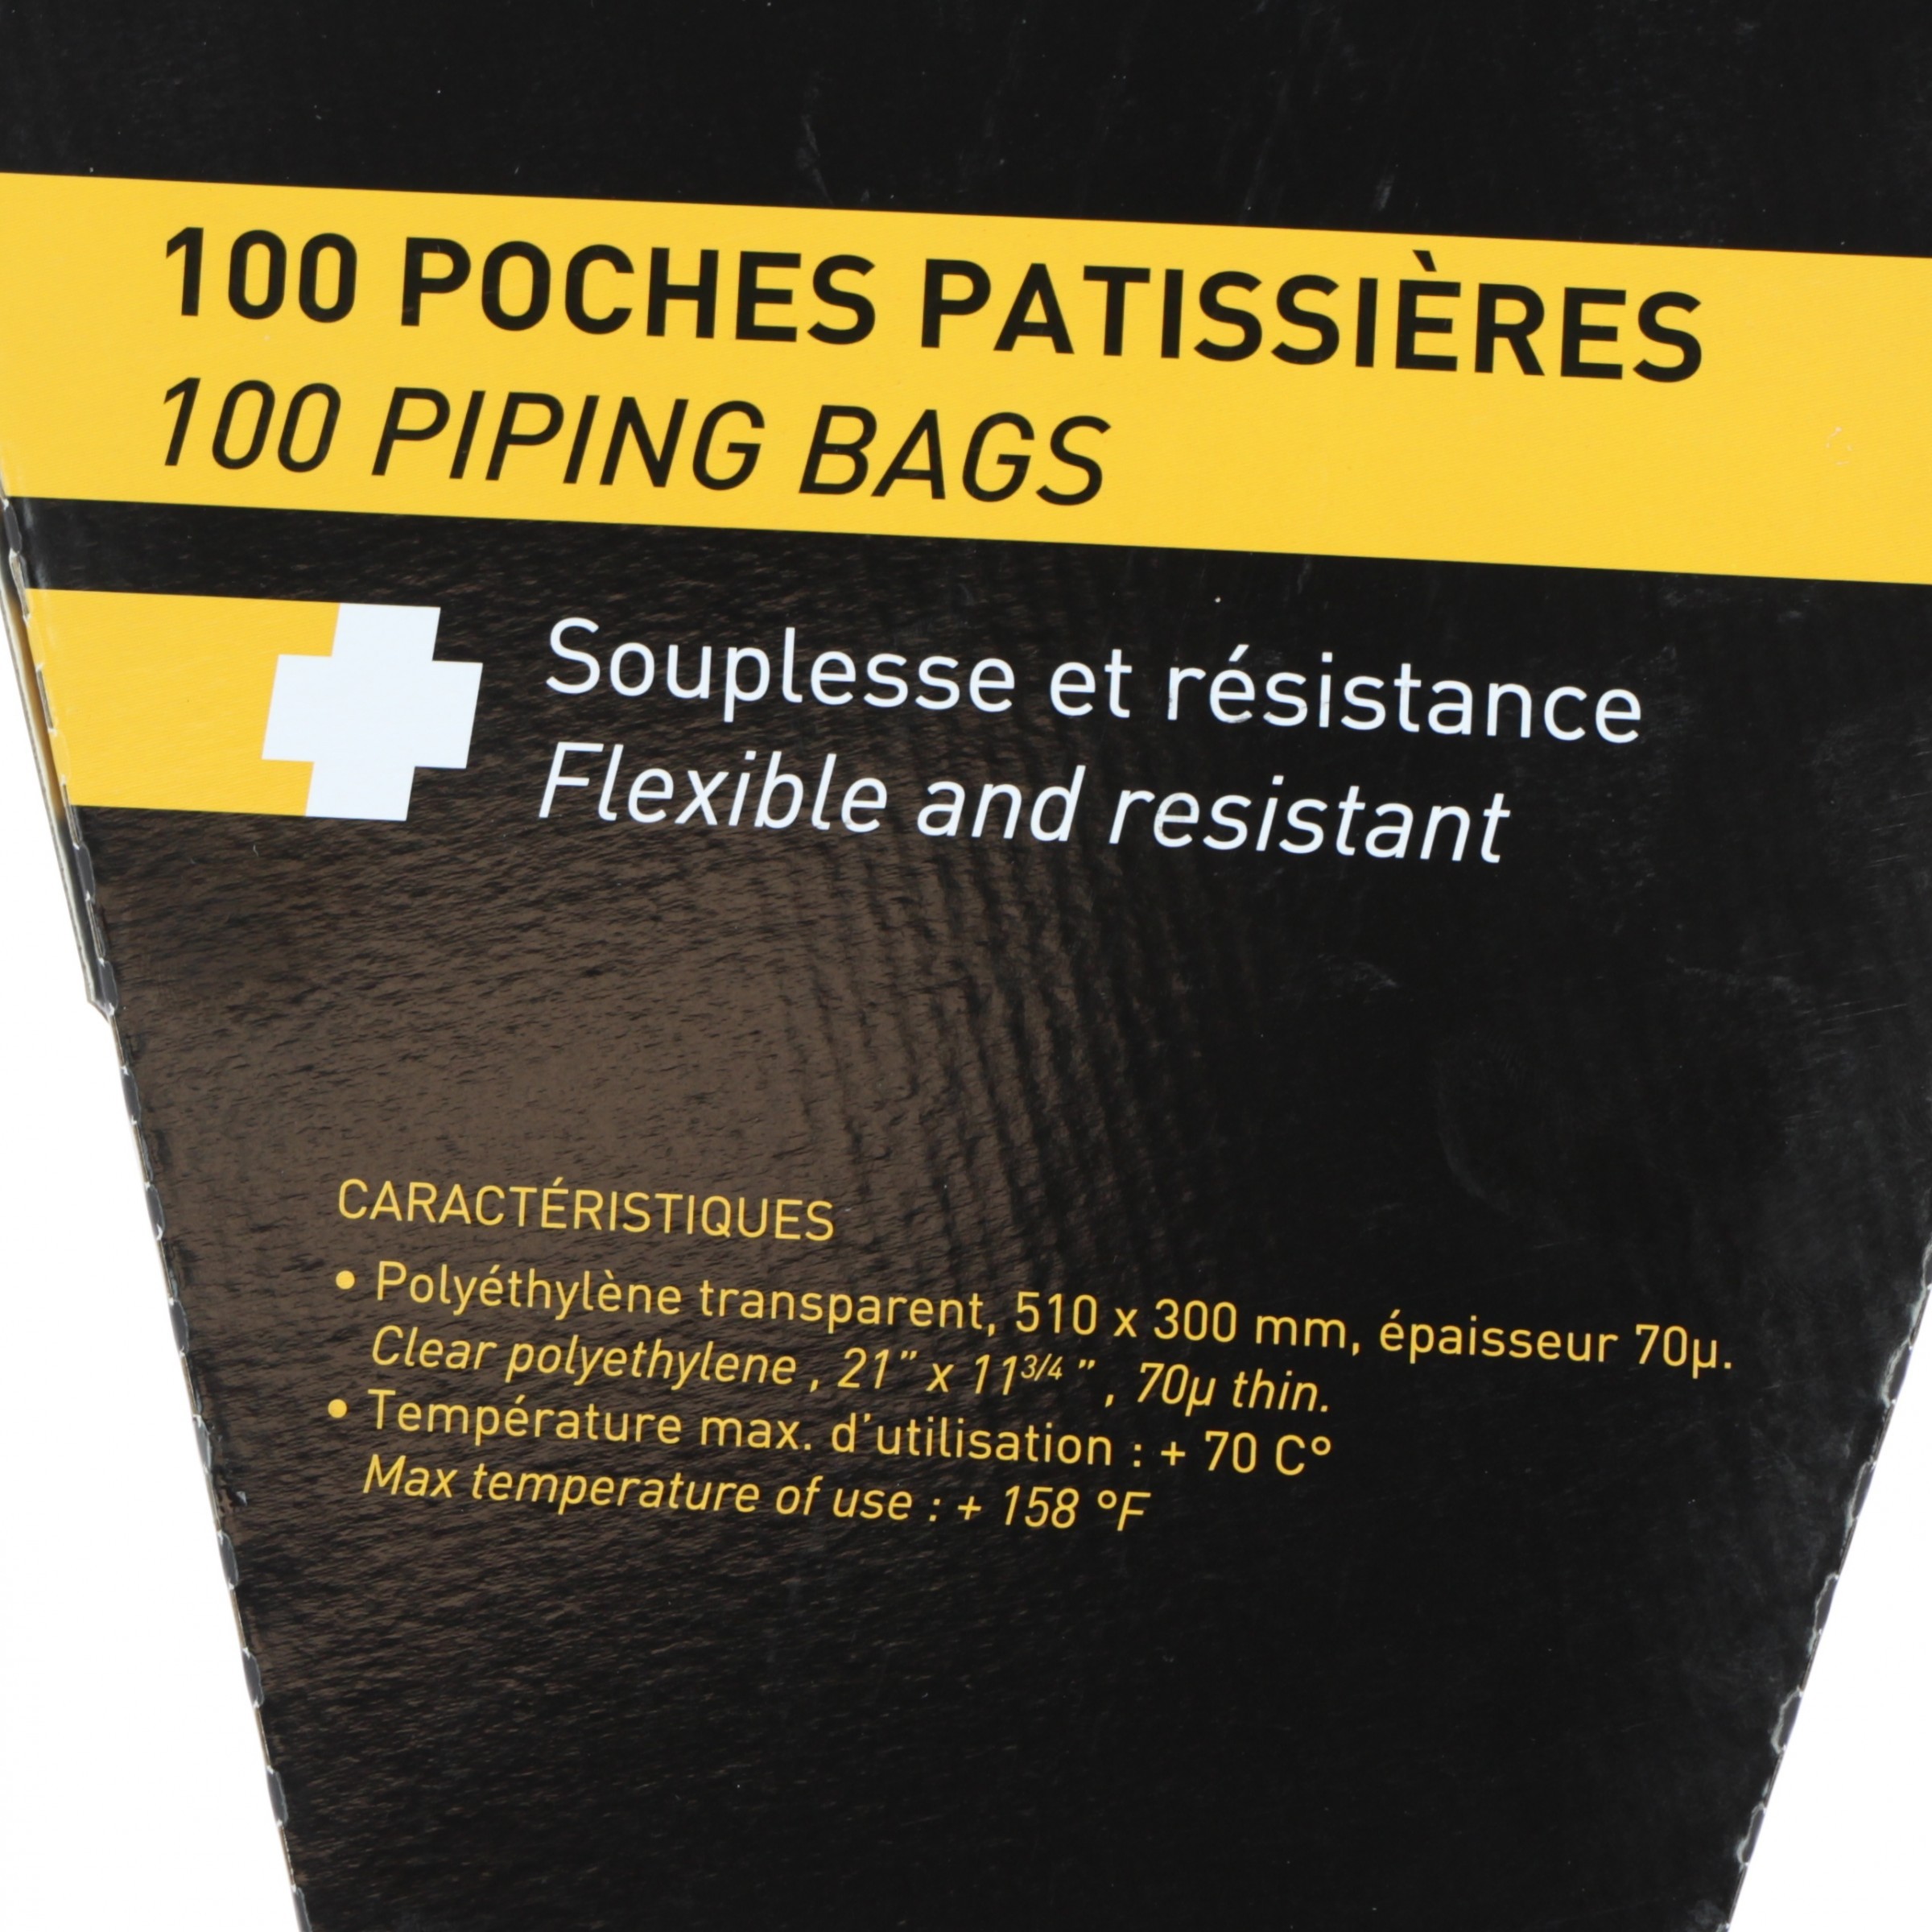 100 poches pâtissières à douilles transparentes jetables 51 cm